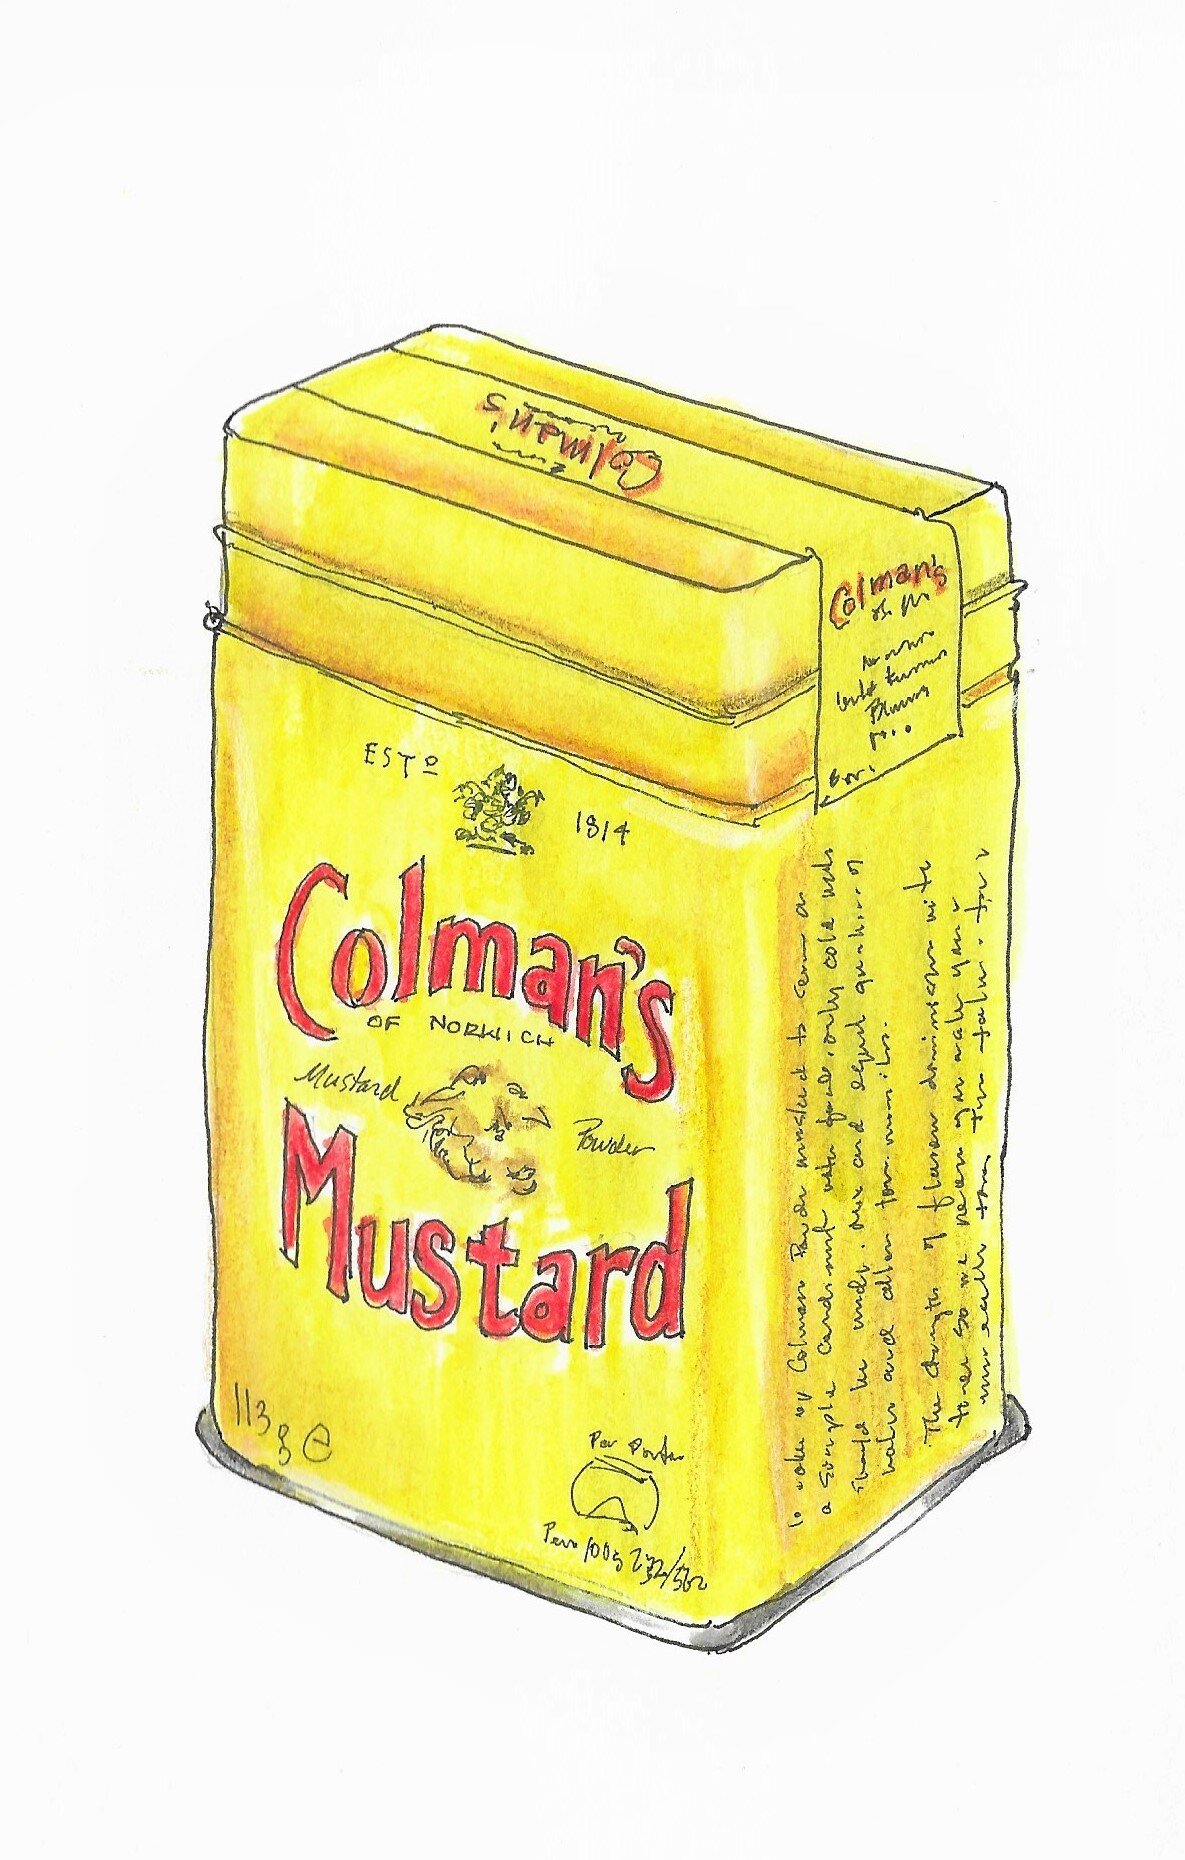 mustard.jpg